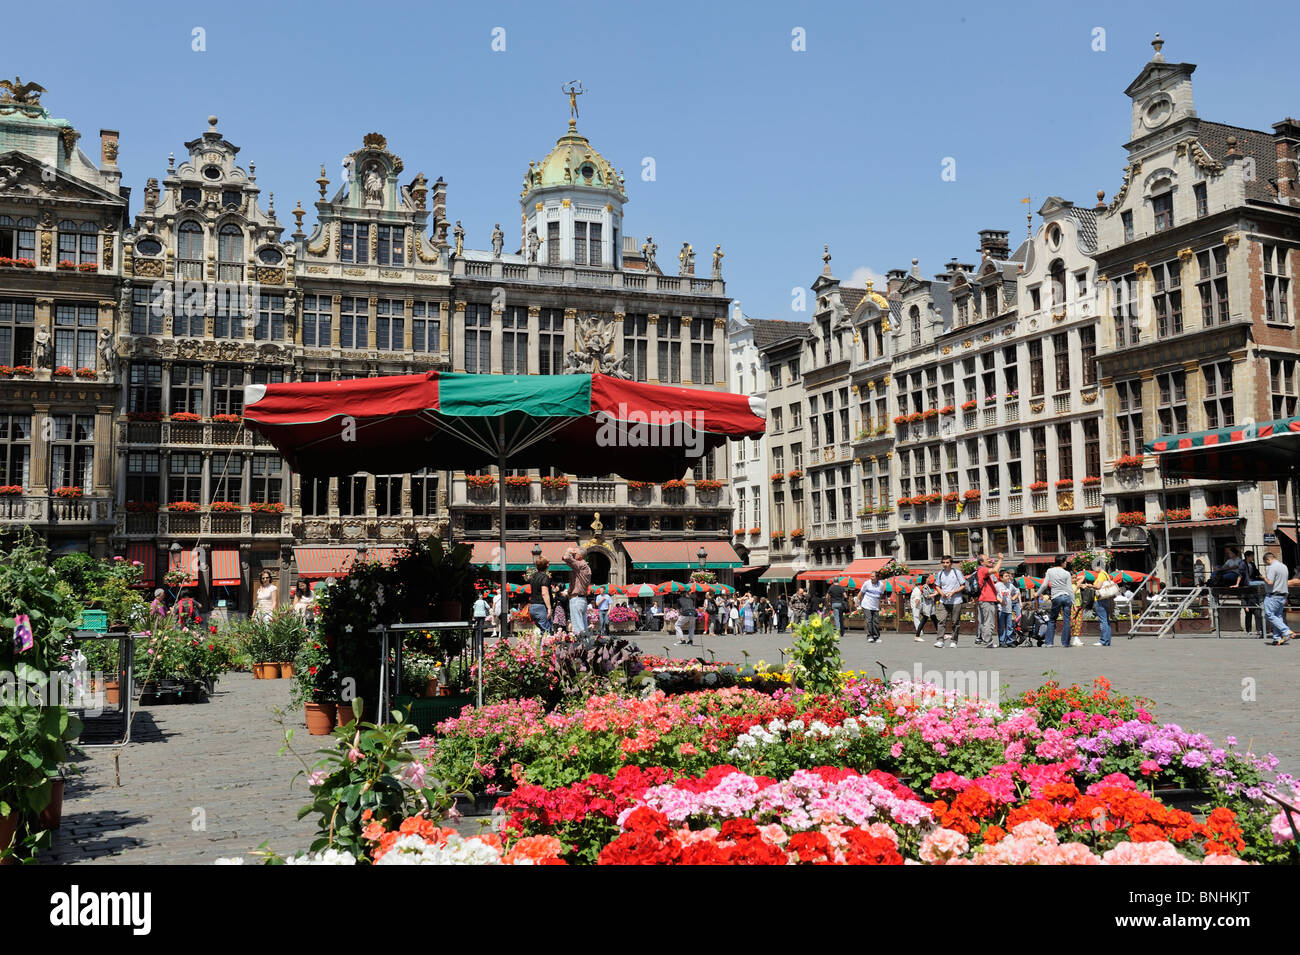 La Grand Place Grand Place Site du patrimoine mondial de l'Unesco place centrale ou plaza à Bruxelles Belgique Europe flower stall Banque D'Images